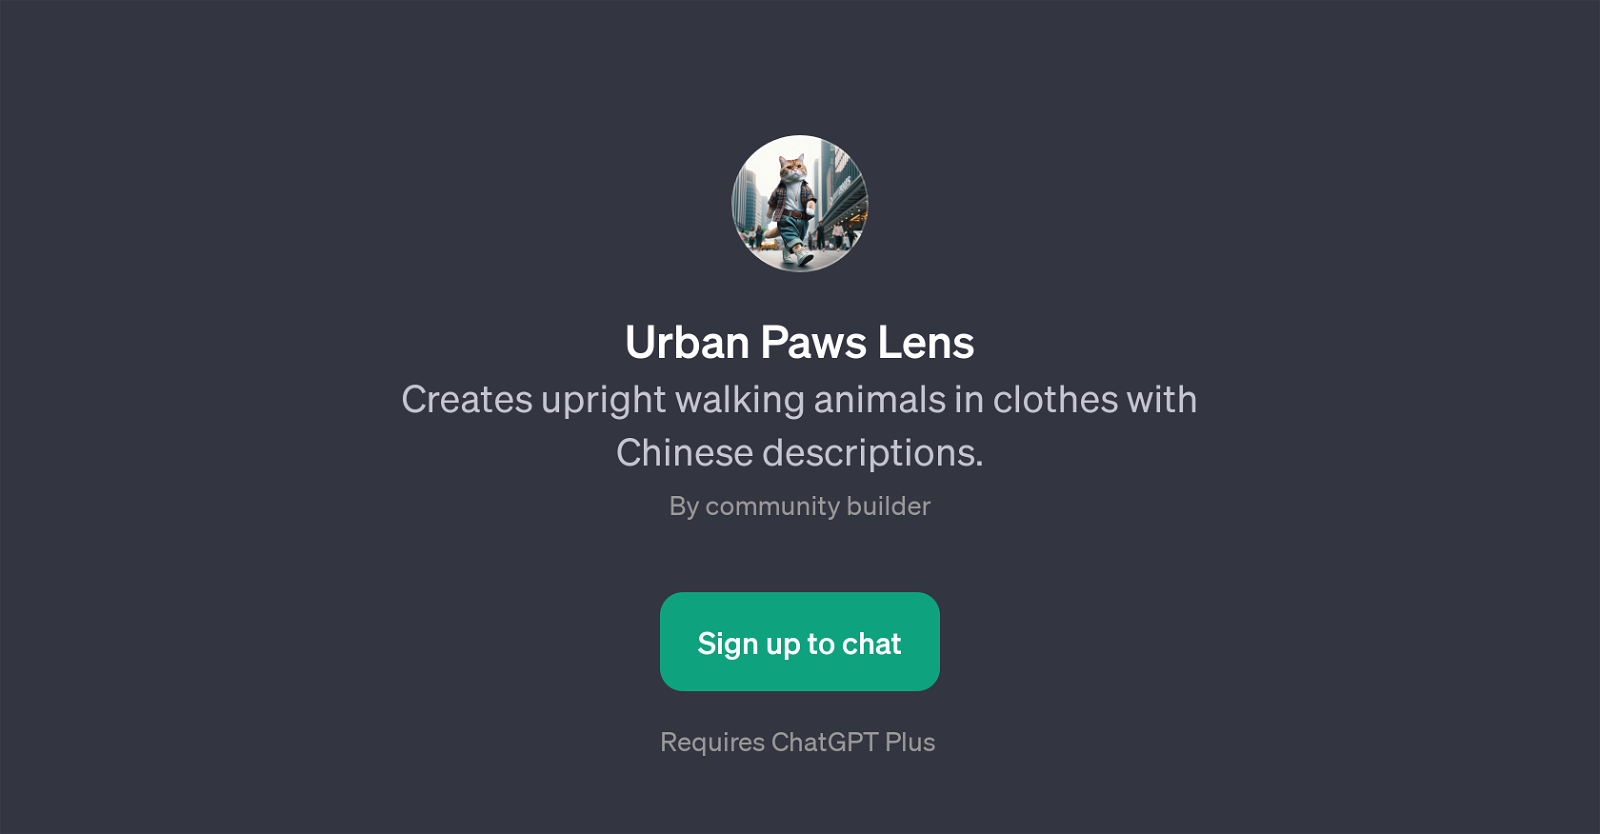 Urban Paws Lens website